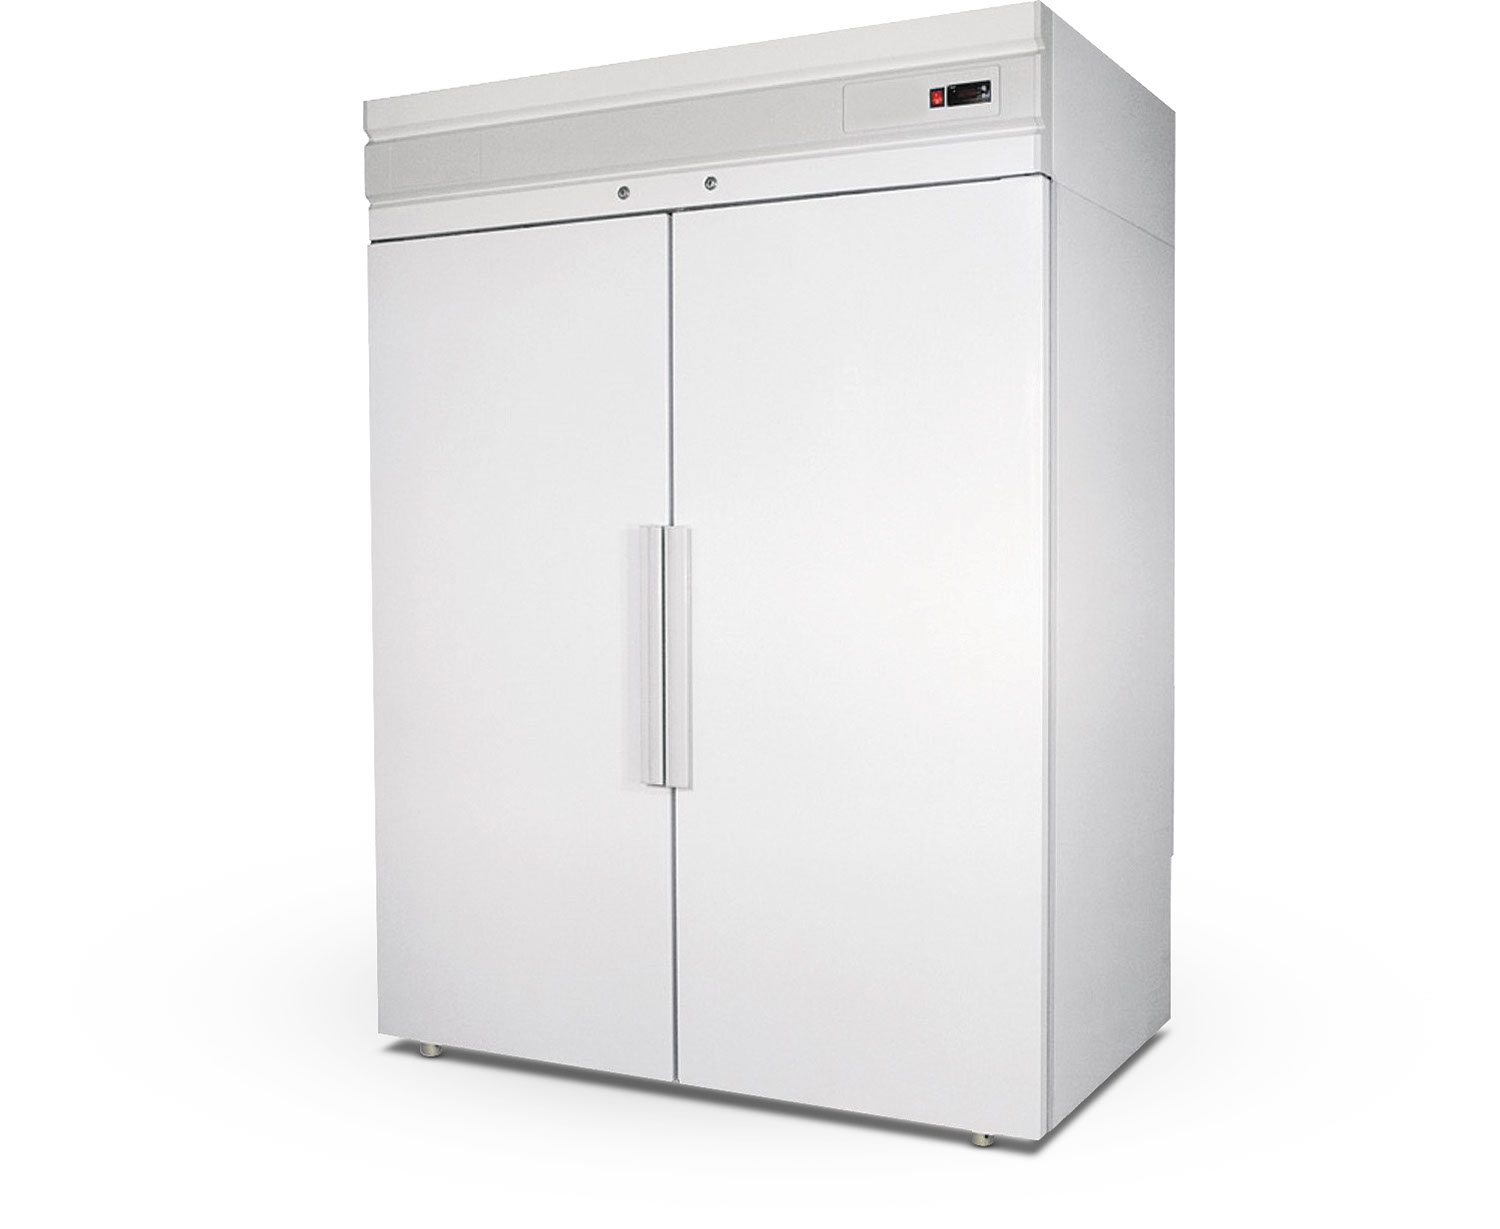 CM114 Univerzálna 2 dverová chladnička s krídlovými dverami pre GN2/1 alebo E2